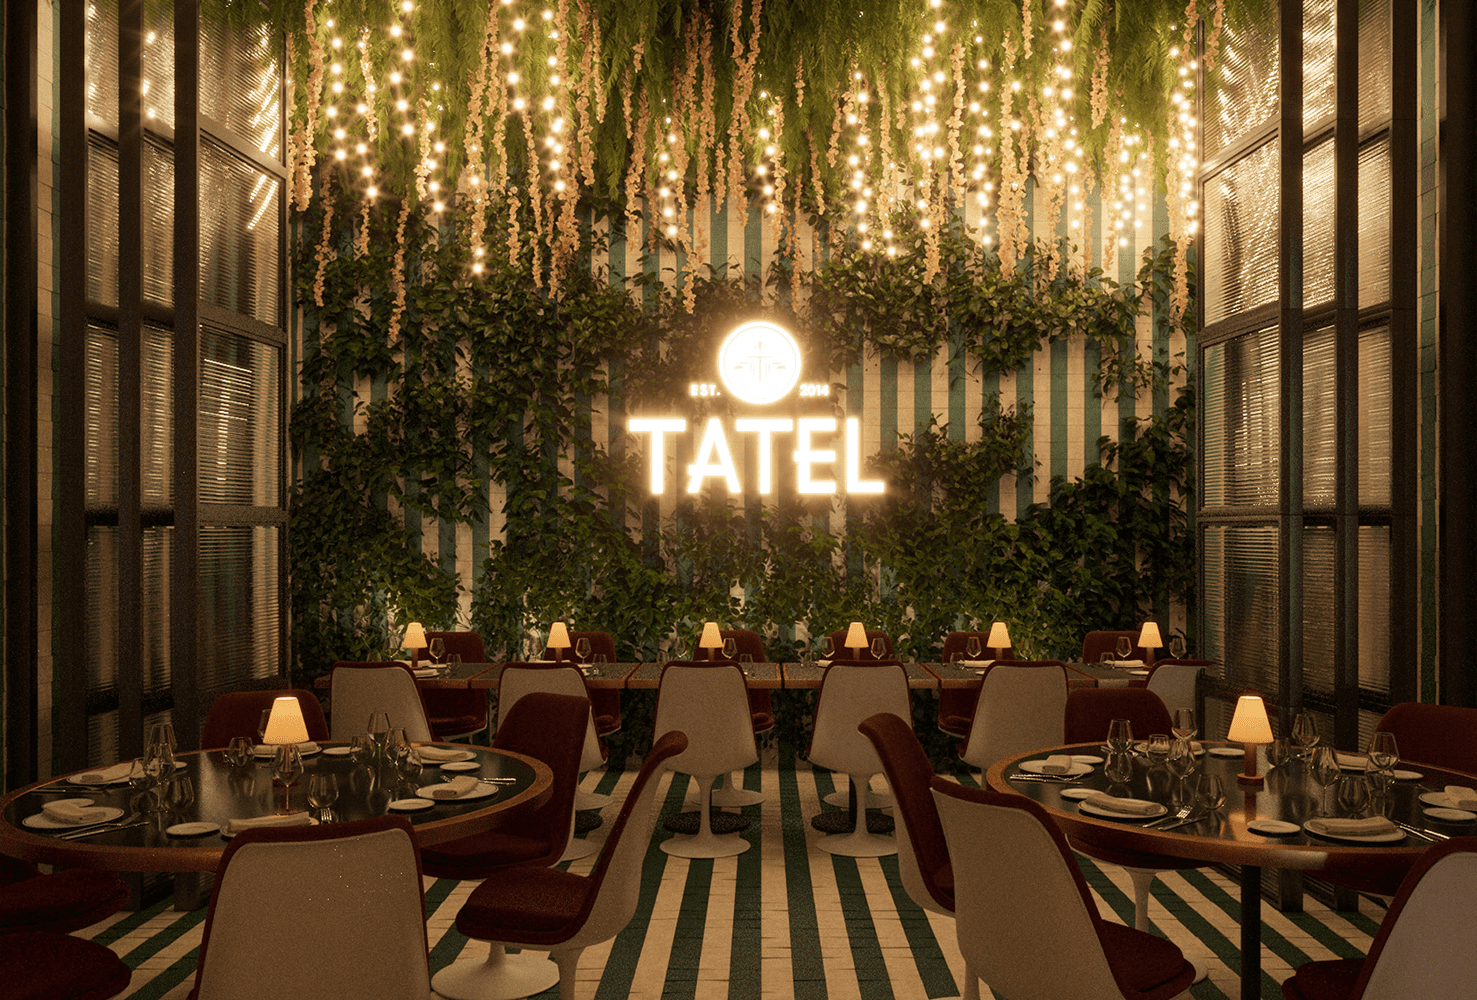 Interior del restaurante Tatel Valencia, en la decoración destaca el neón dorado sobre un jardín vertical iluminado con pequeñas luces doradas.